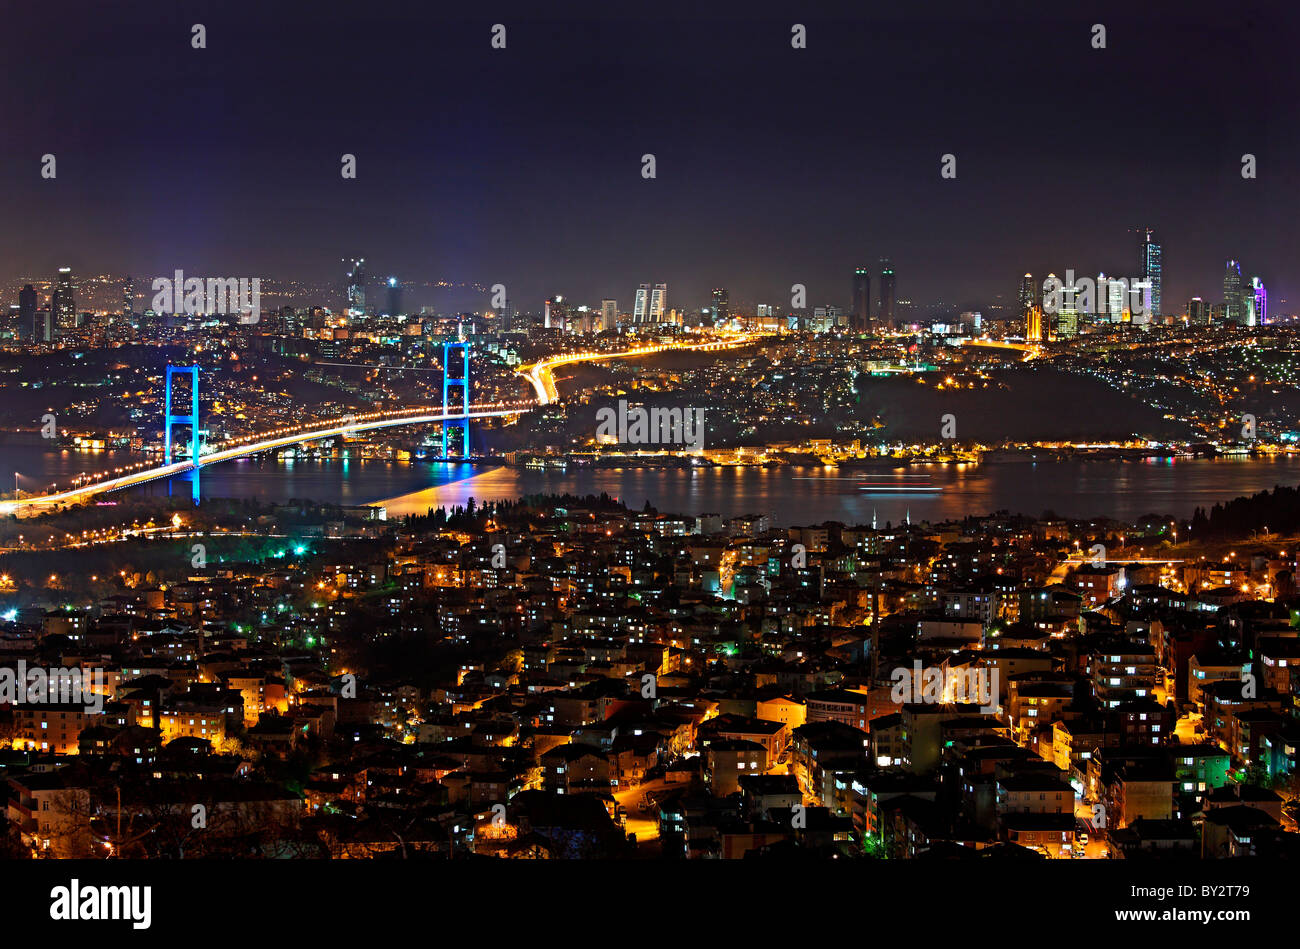 Eine Nacht Blick auf die erste Brücke Bosporus, die einem nicht nur verbinden der beiden Seiten von Istanbul, sondern auch Europa und Asien. Stockfoto